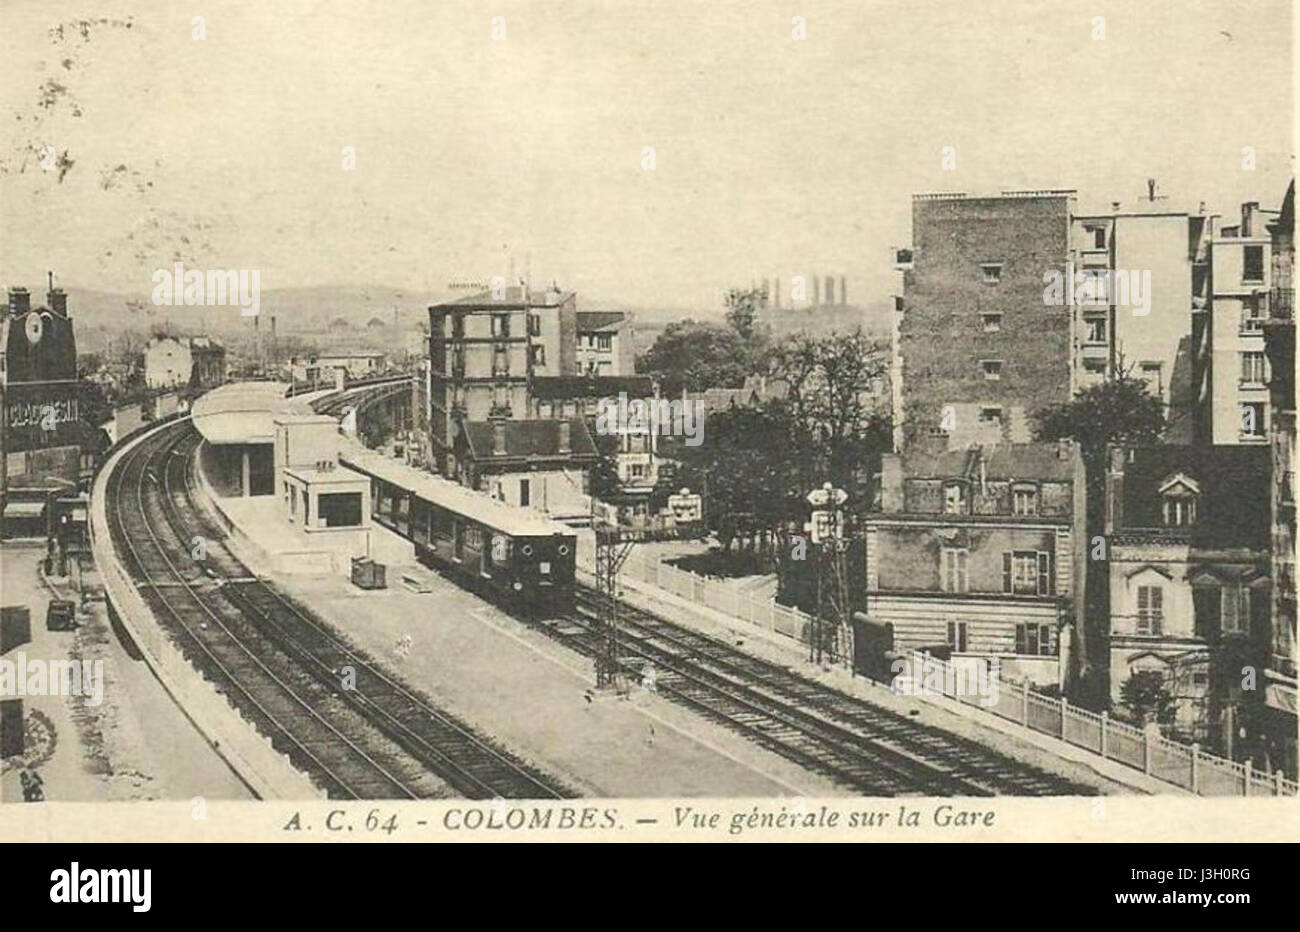 Gare de Colombes (1937) Stock Photo